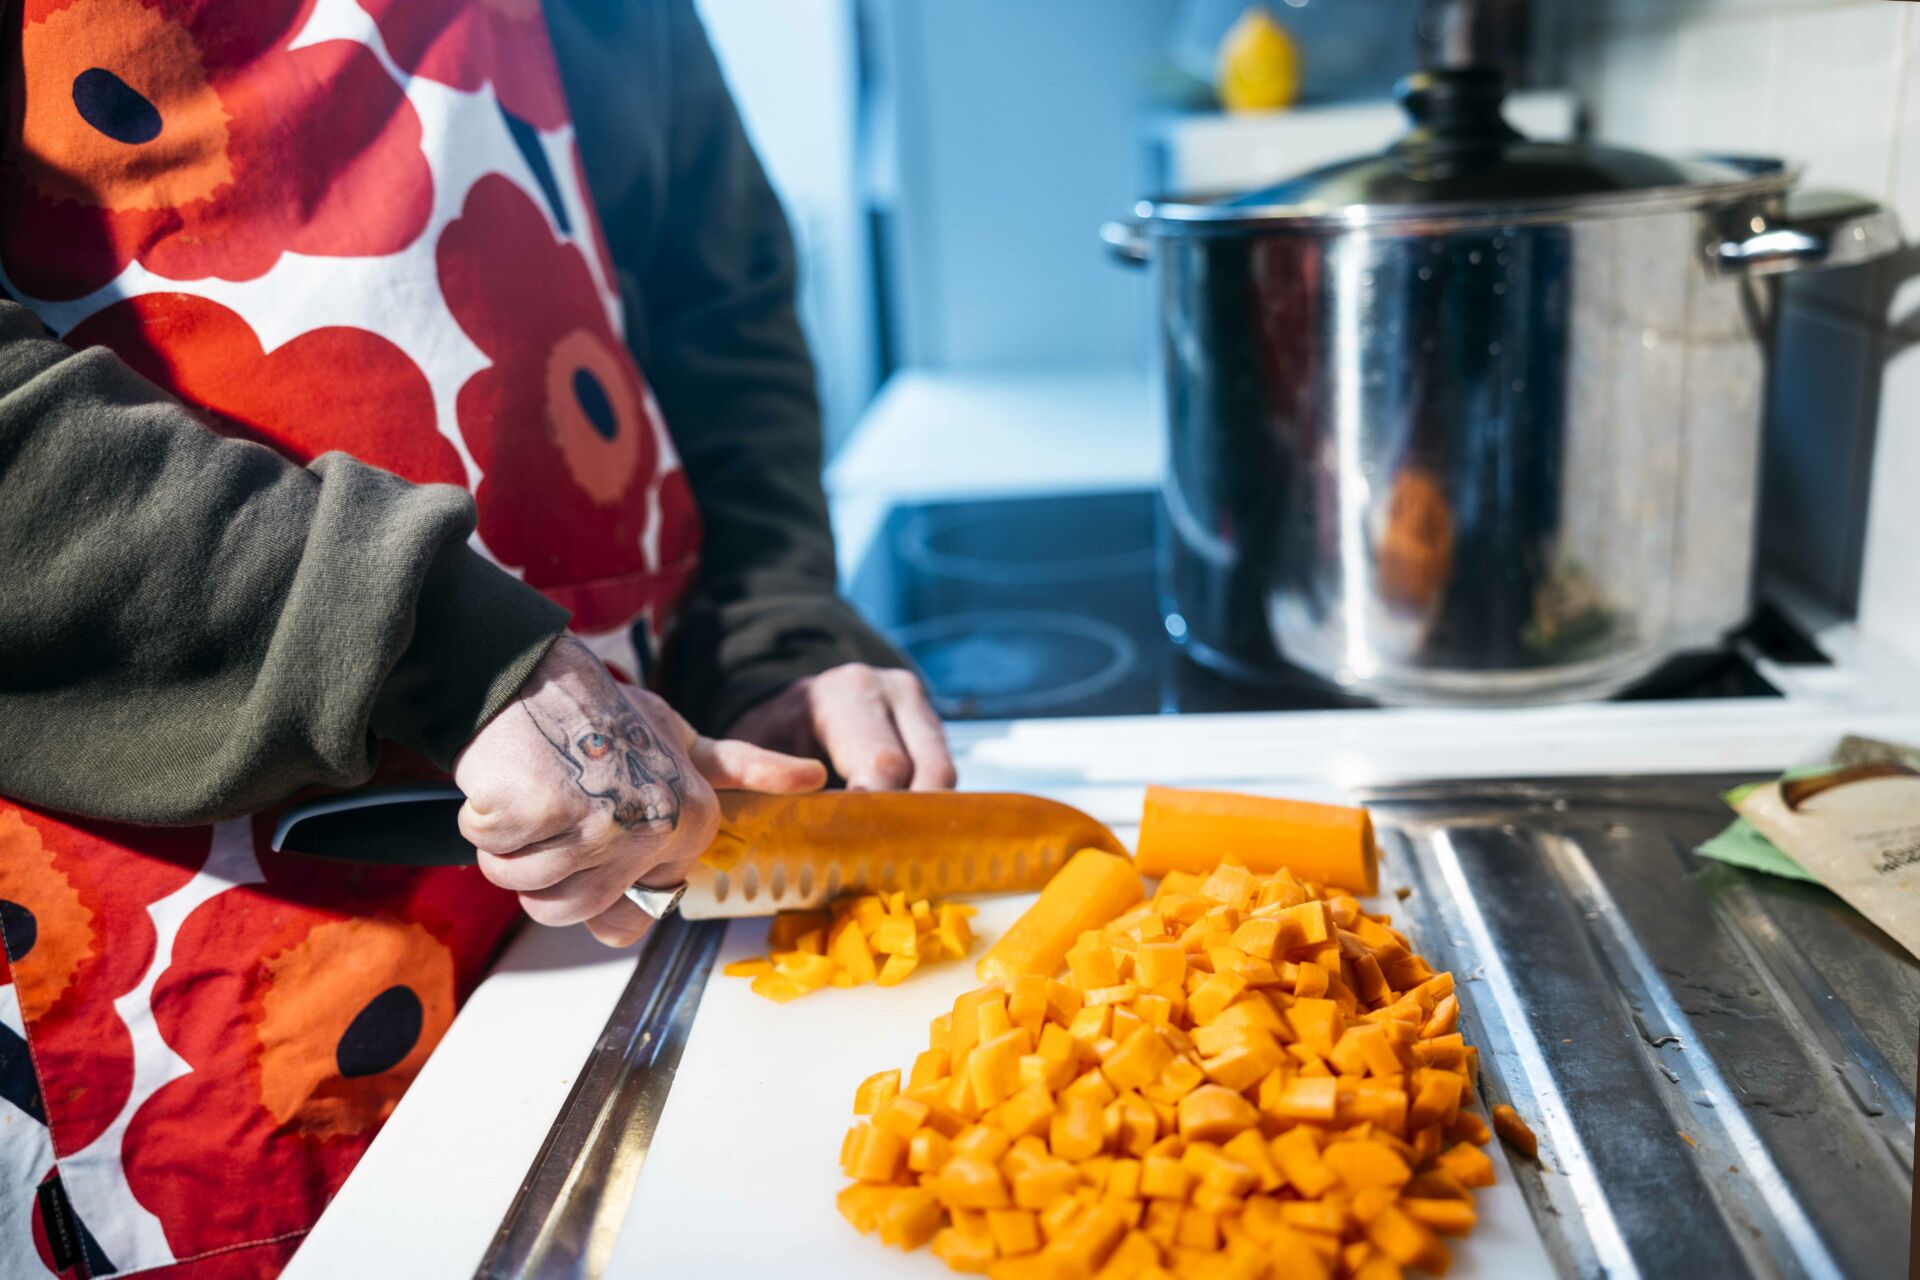 Mies leikkaa porkkanoita keittiössä. Hänellä on unikko-essu ja tatuointi kädessään.